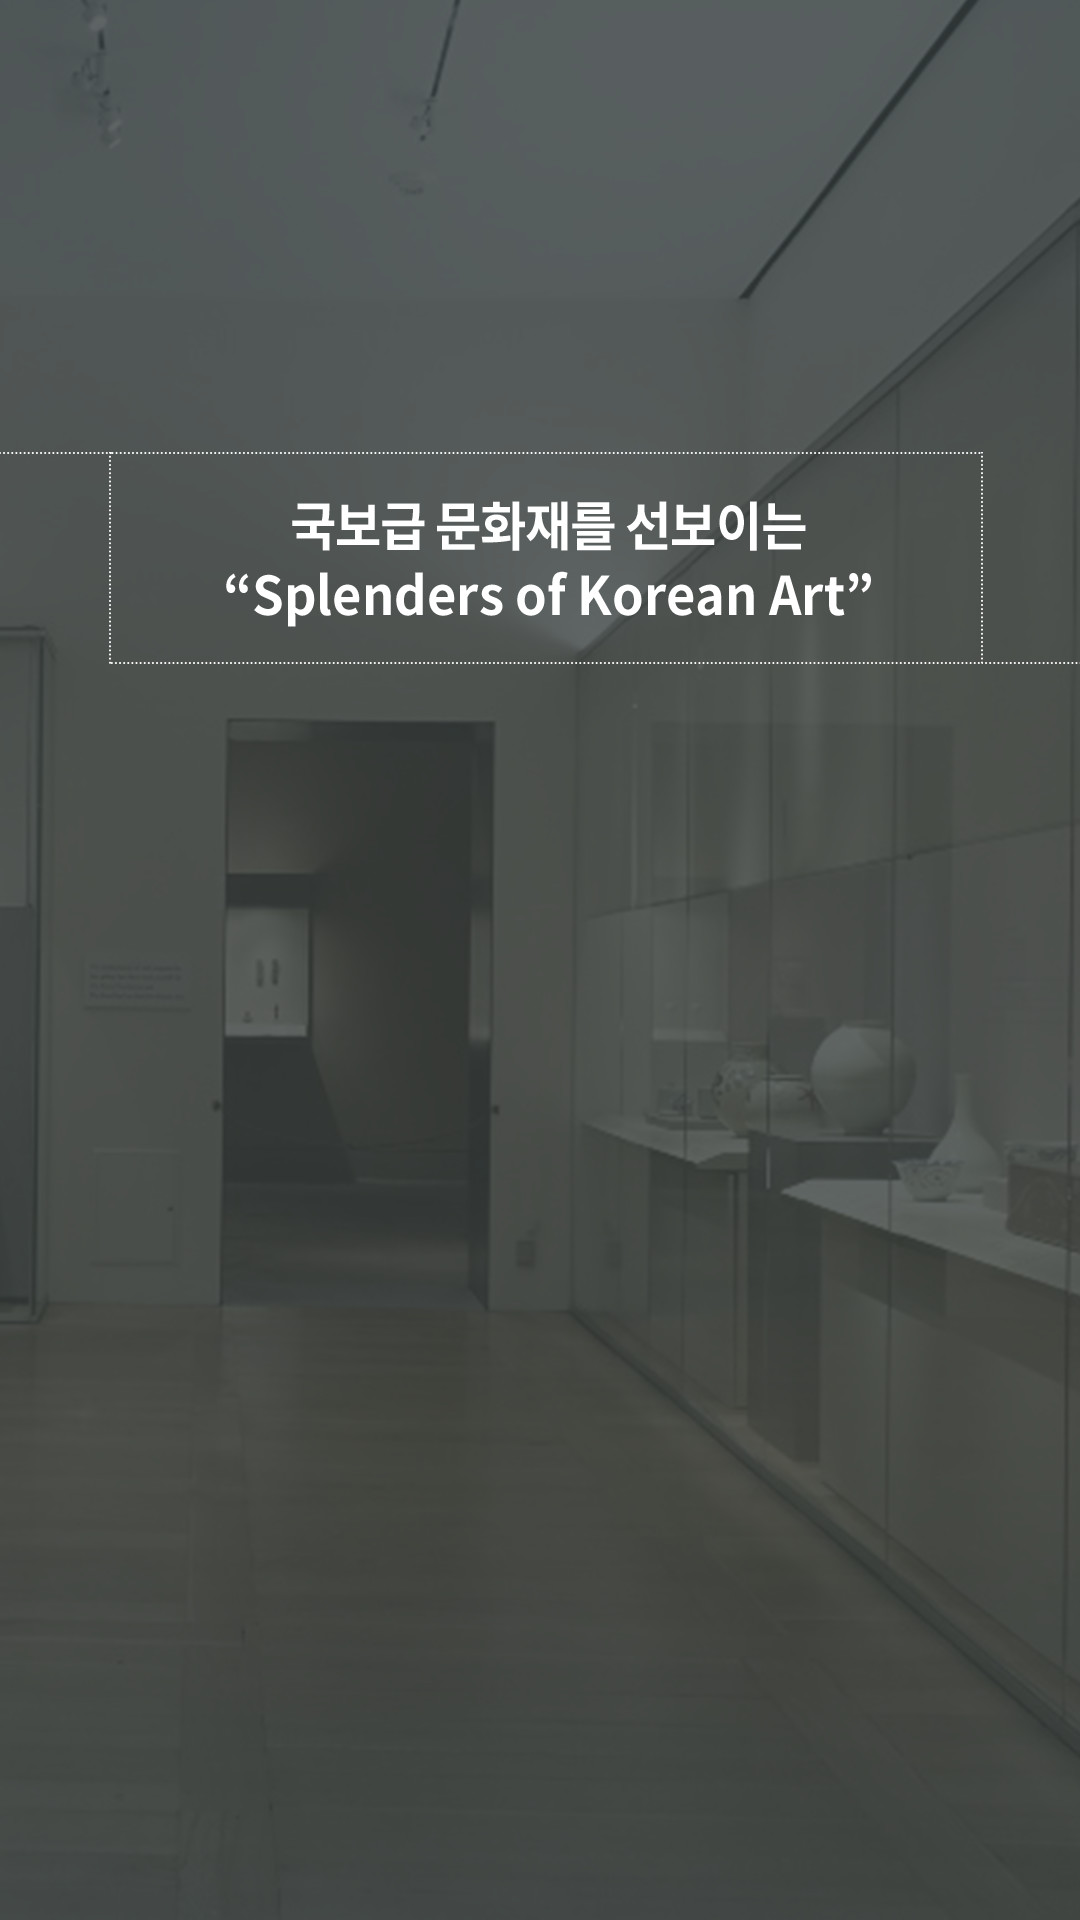 이미지 Splendors of Korean Art 포스트